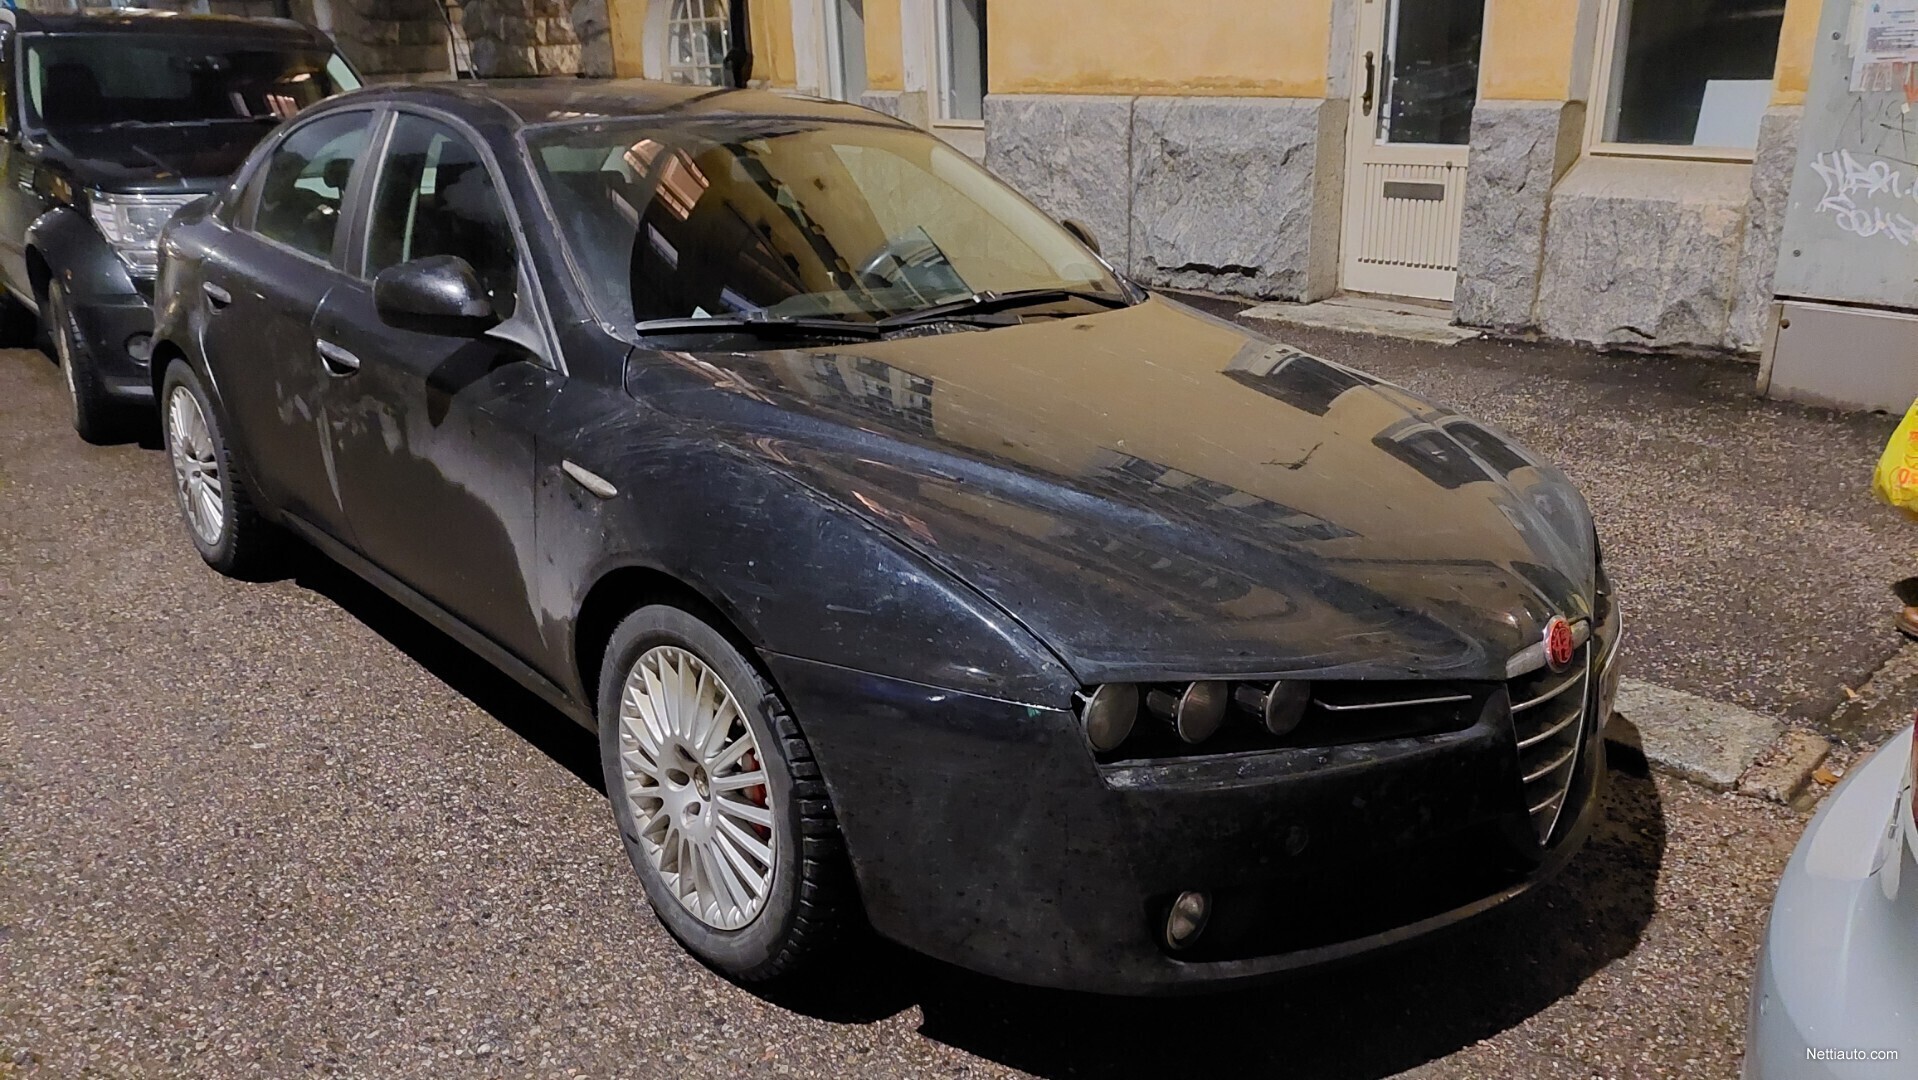 Alfa Romeo 159 2.4 JTDM 210 hv (2008) Sedan 2007 - Used vehicle - Nettiauto